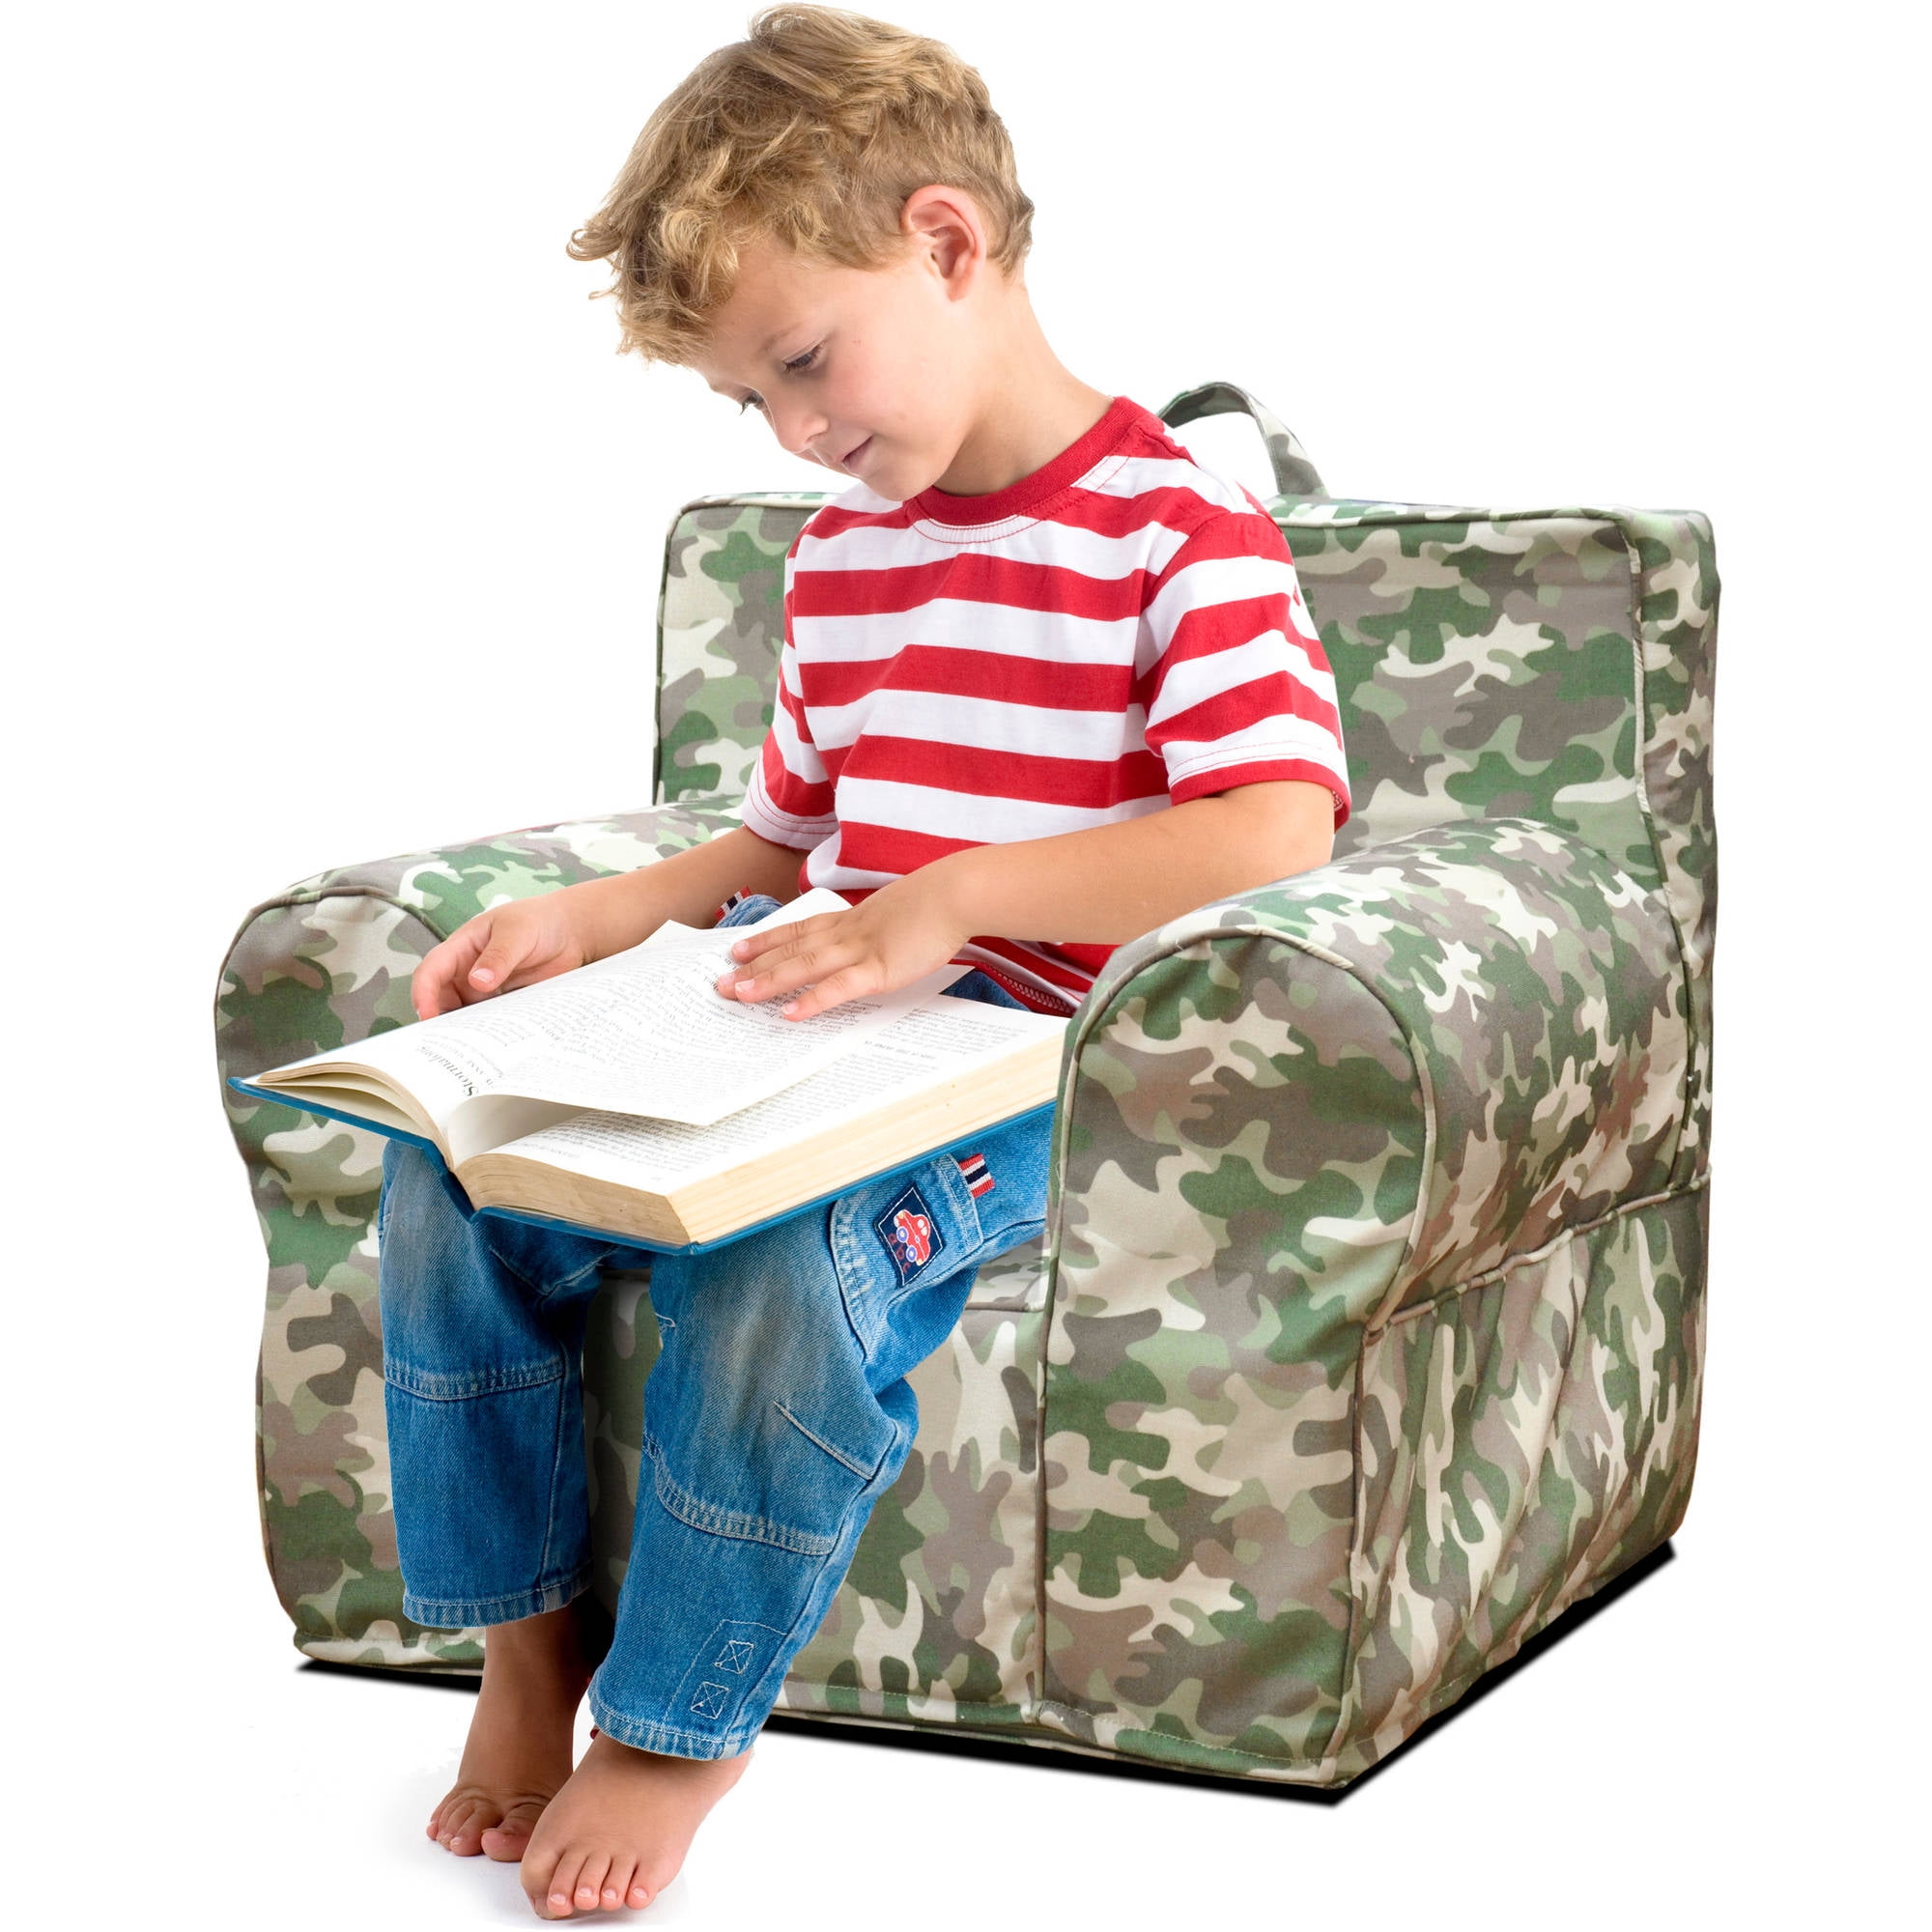 American Kids Everywhere Foam Chair, Navy, 25.25 W x 21 D x 22.5 H